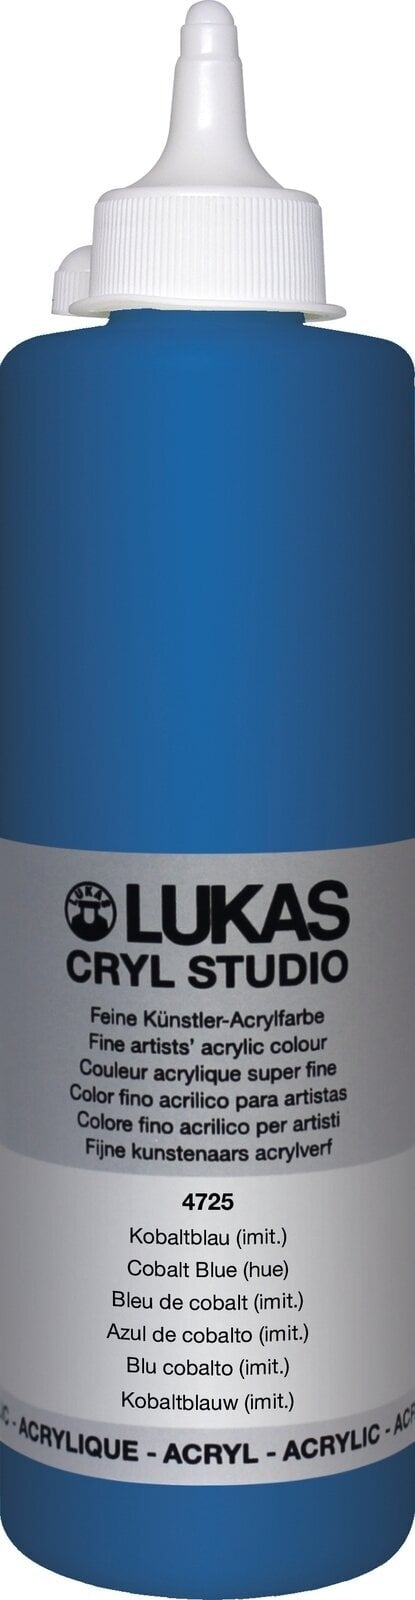 Peinture acrylique Lukas Cryl Studio Acrylic Paint Plastic Bottle Peinture acrylique Cobalt Blue Hue 500 ml 1 pc